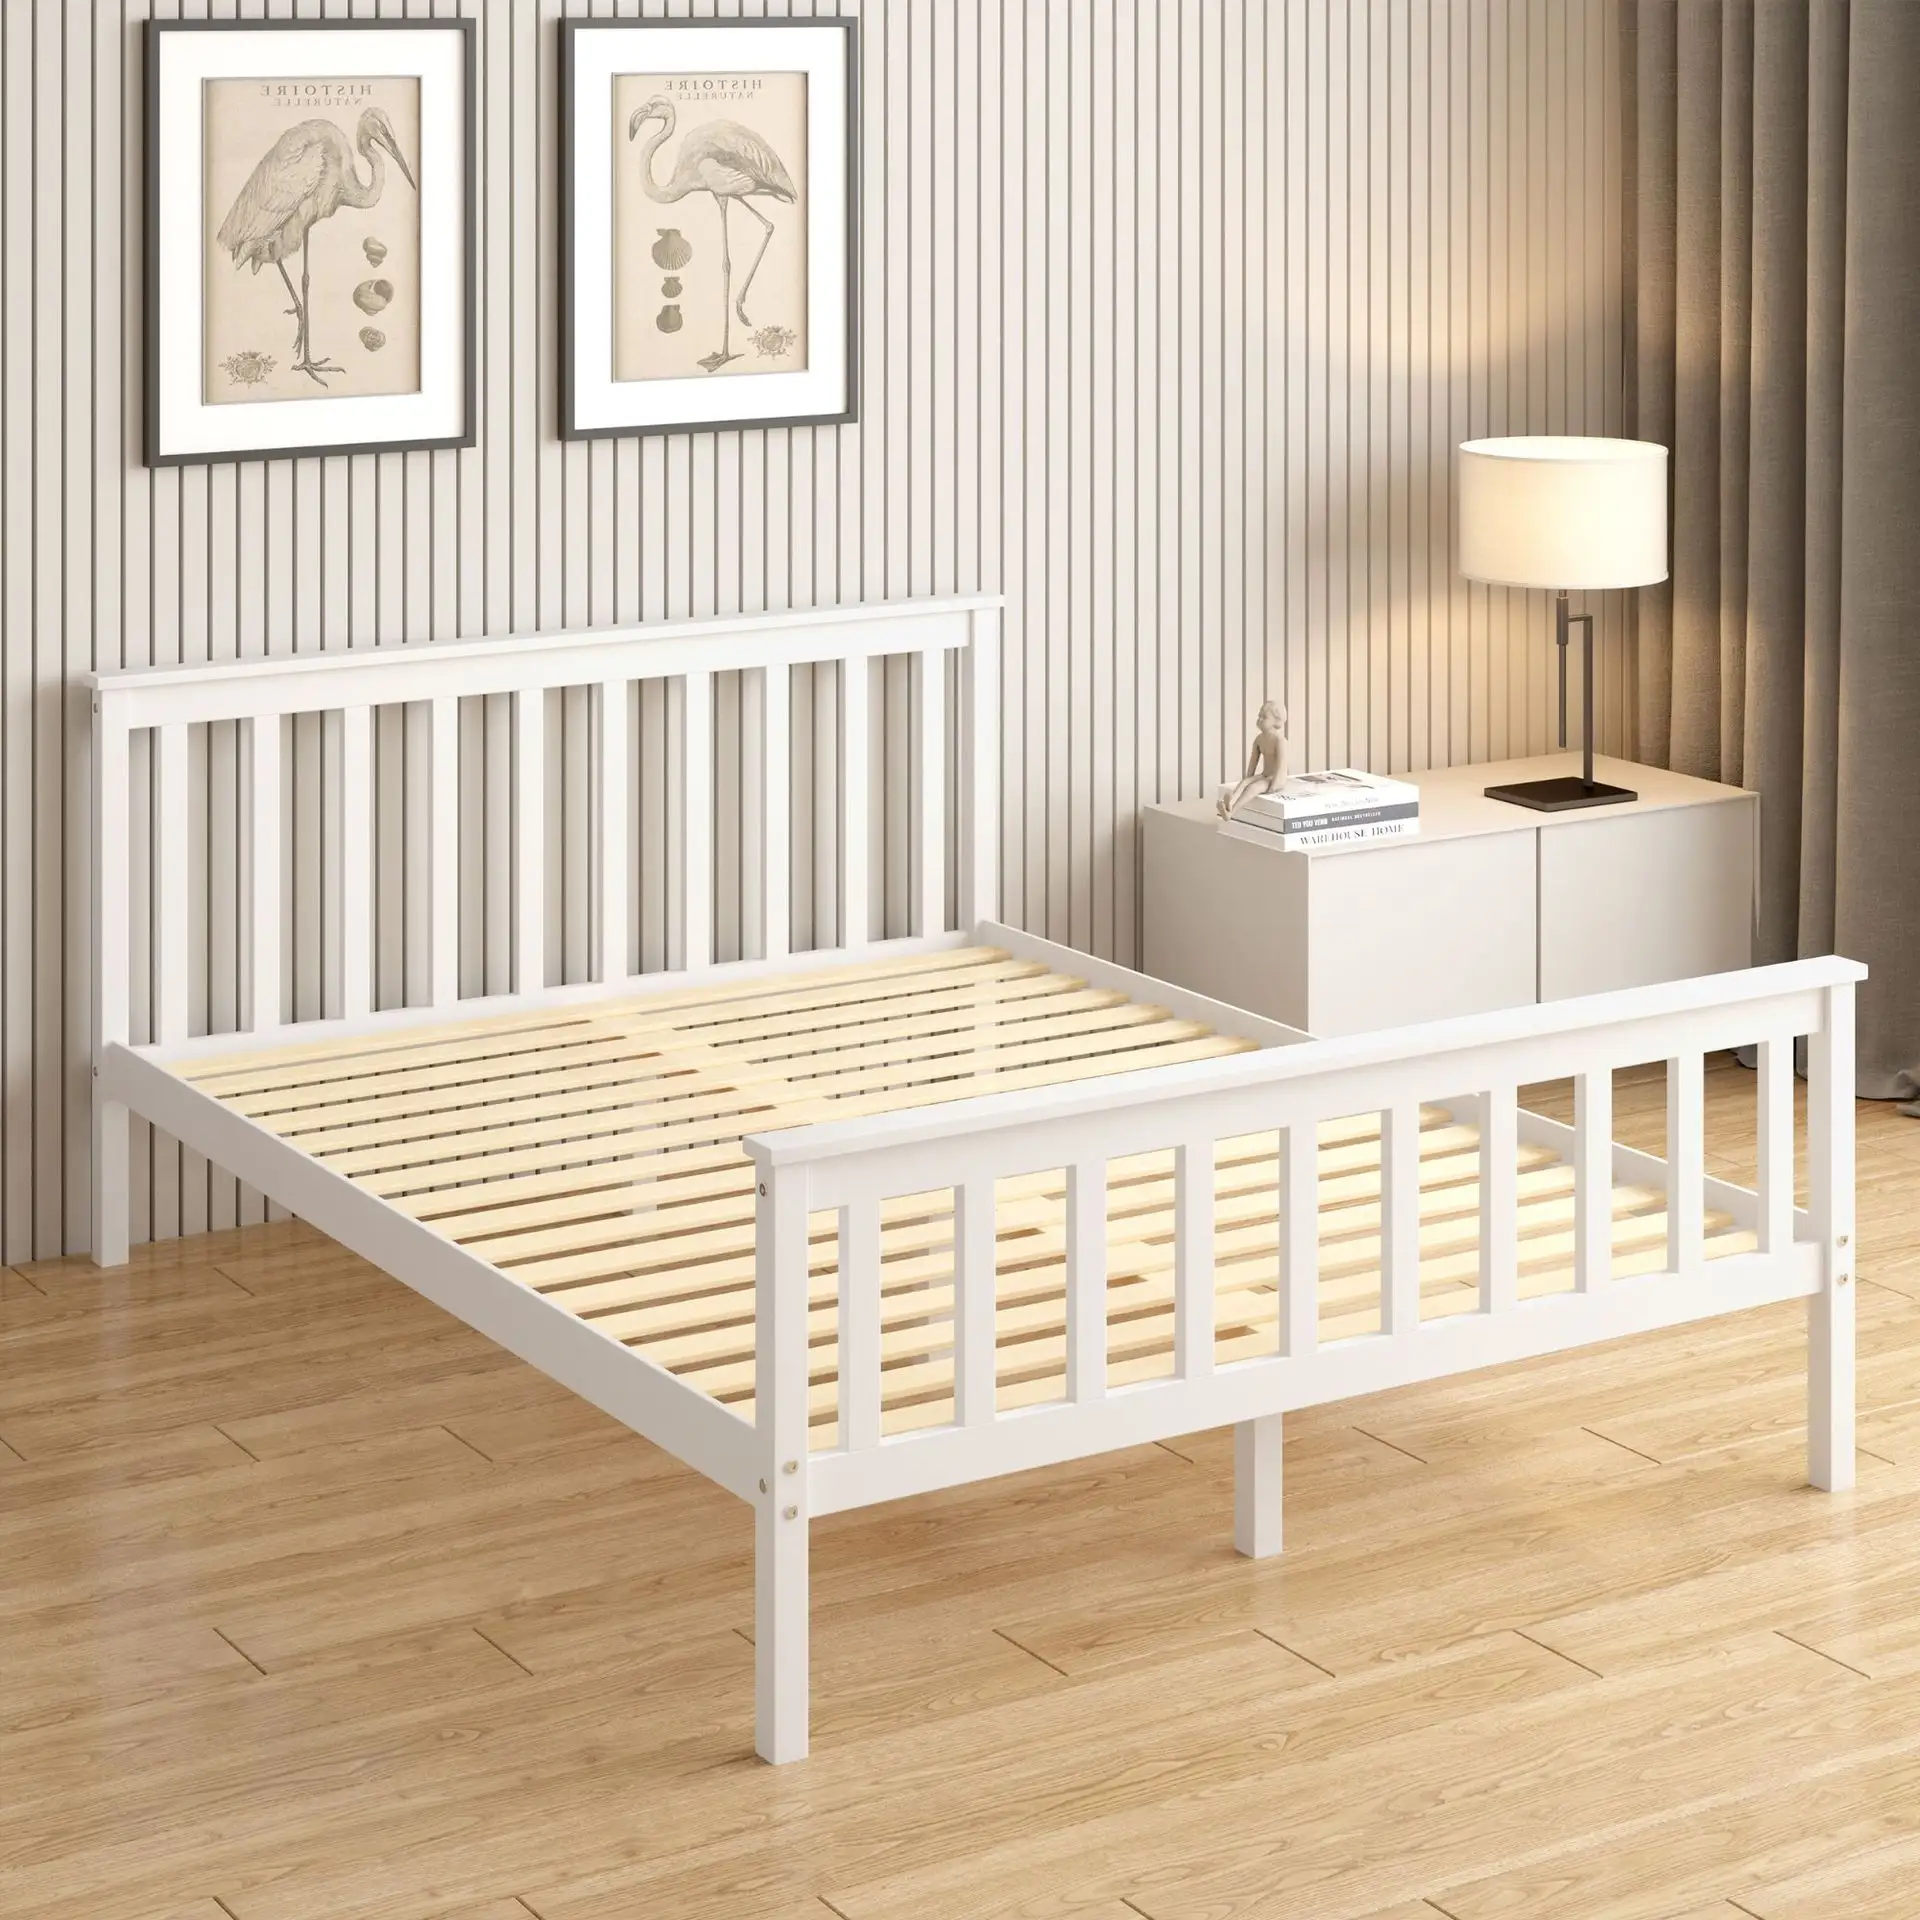 Bedroom furniture simple design cheap wood bed frame lit complet lits en bois